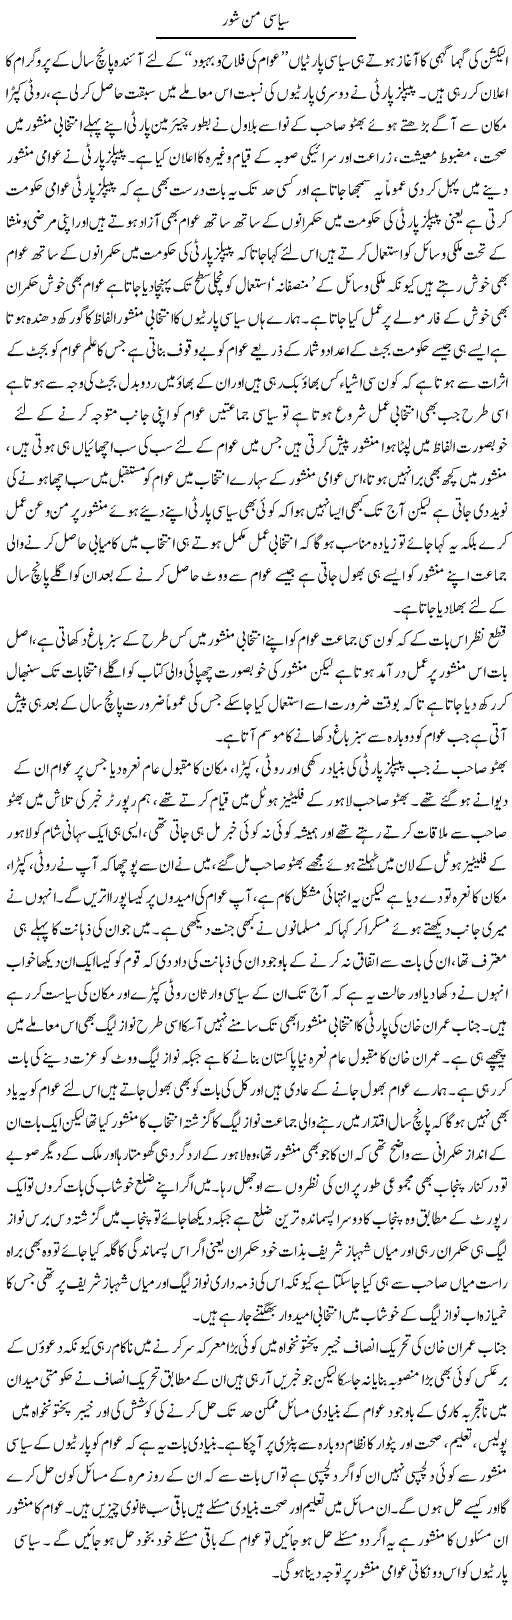 Siyasi Manshoor | Abdul Qadir Hassan | Daily Urdu Columns